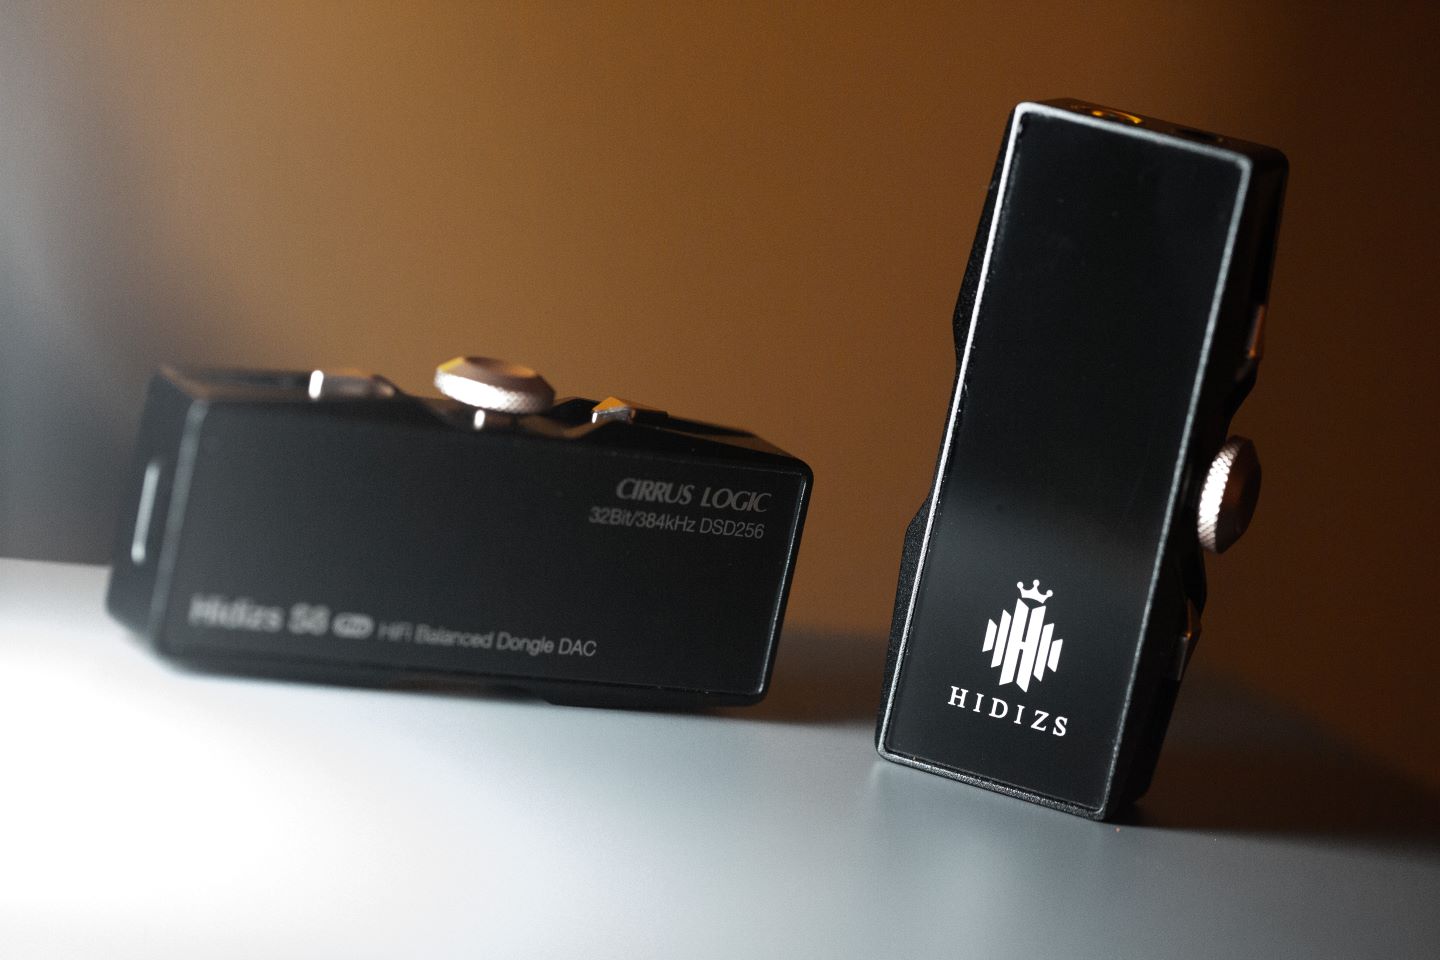 HIDIZS Announces S8 PRO Robin DAC Amp for Enhanced Audio on the Go